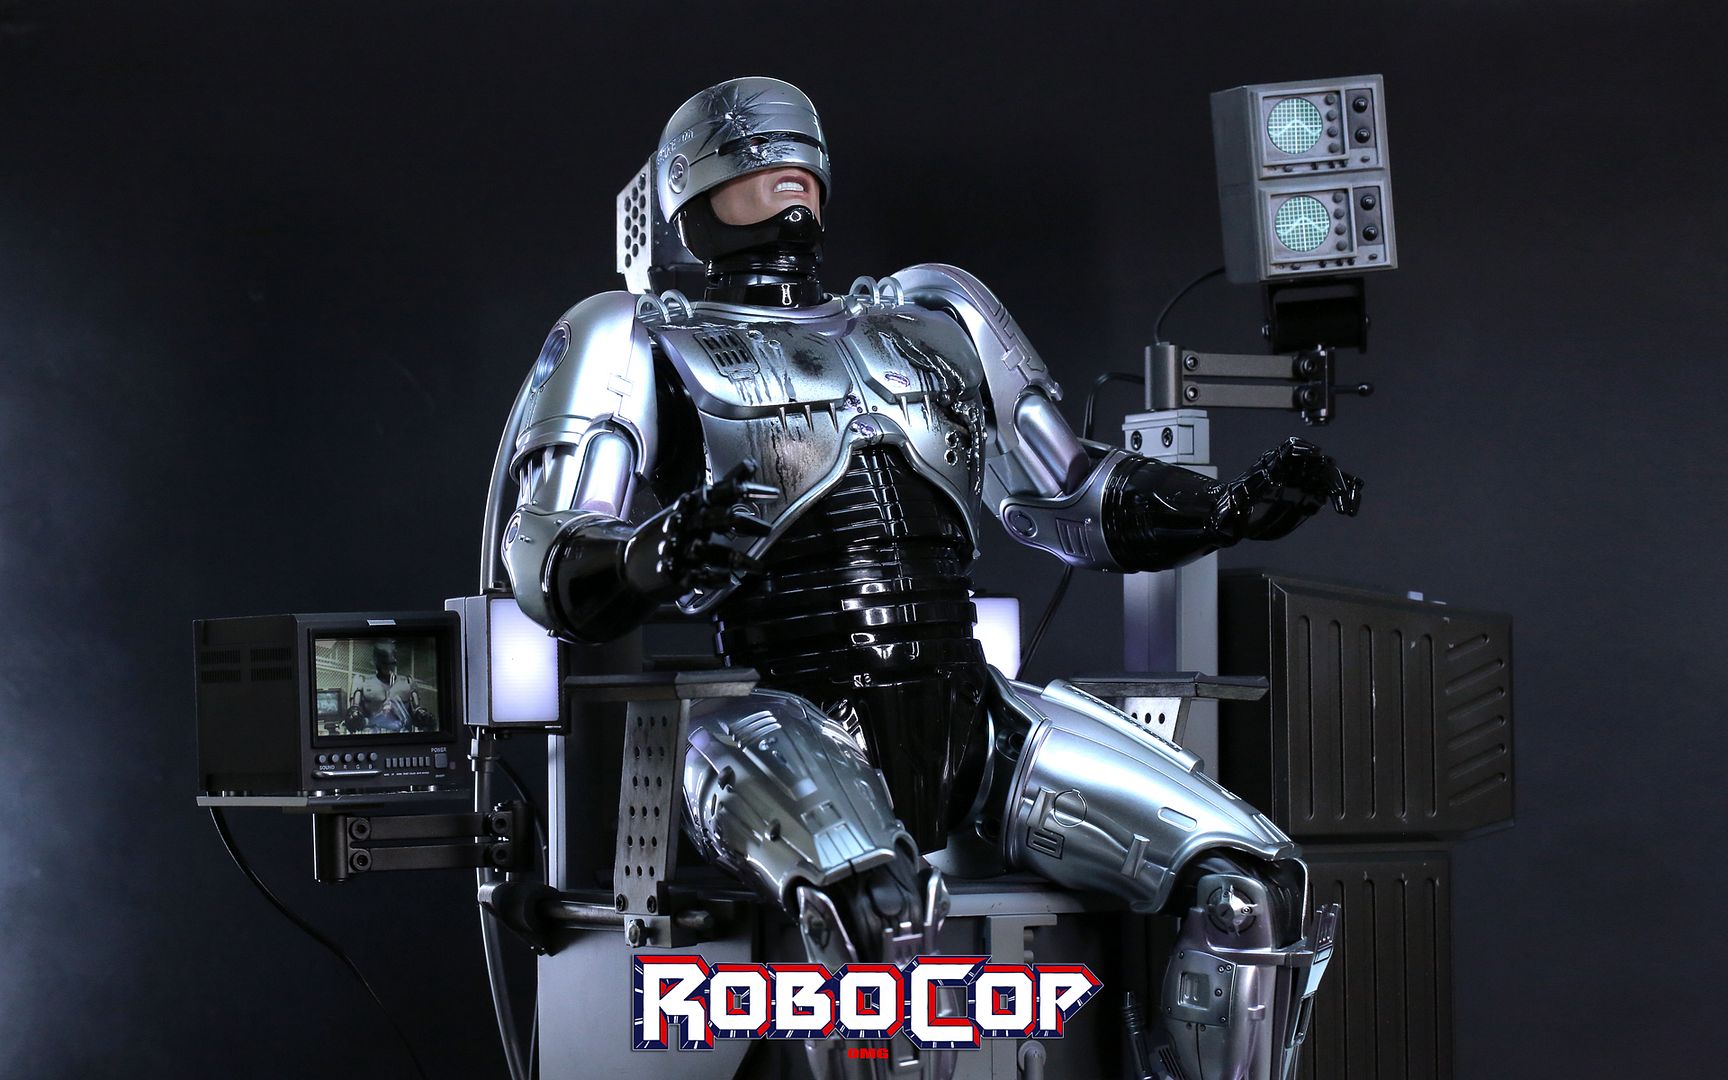 RobocopHD308_zpse86ff69a.jpg